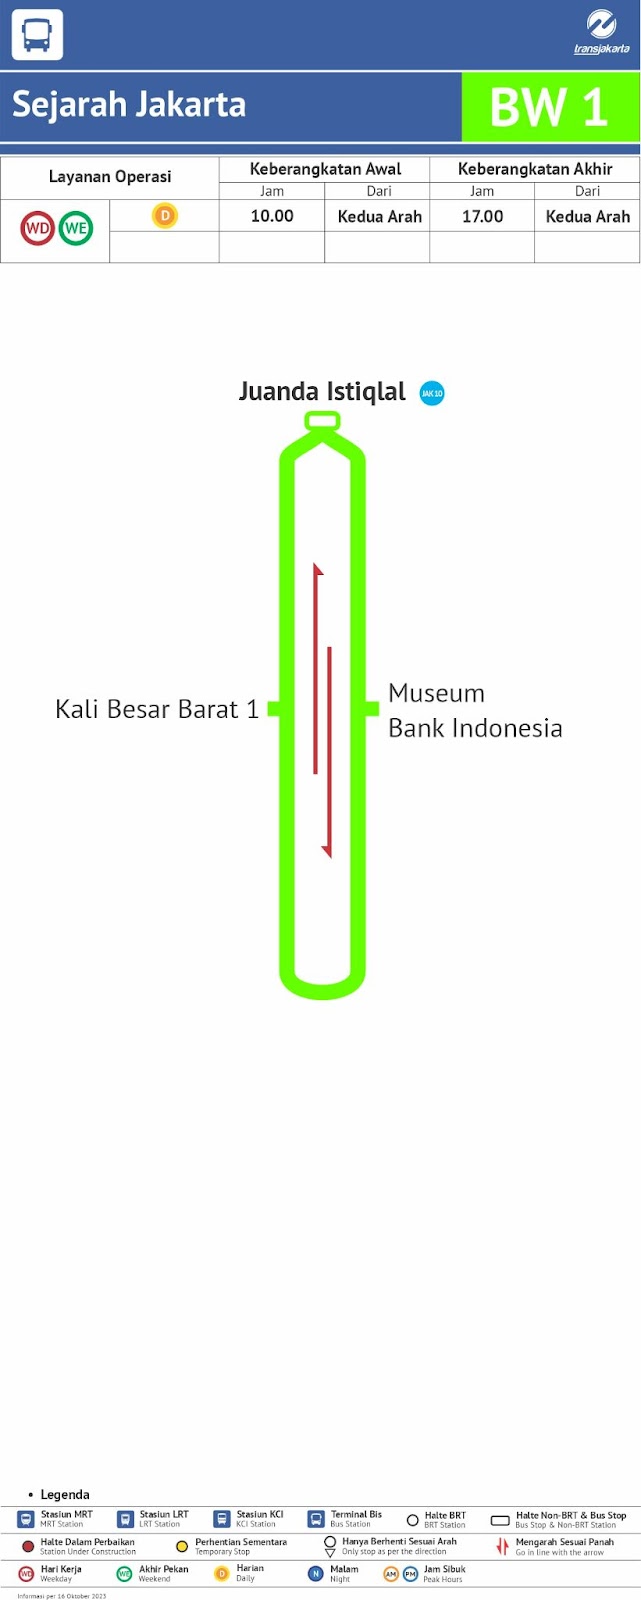 Rute perjalanan BW1: Sejarah Jakarta (History of Jakarta). Sumber:&nbsp;transjakarta.co.id